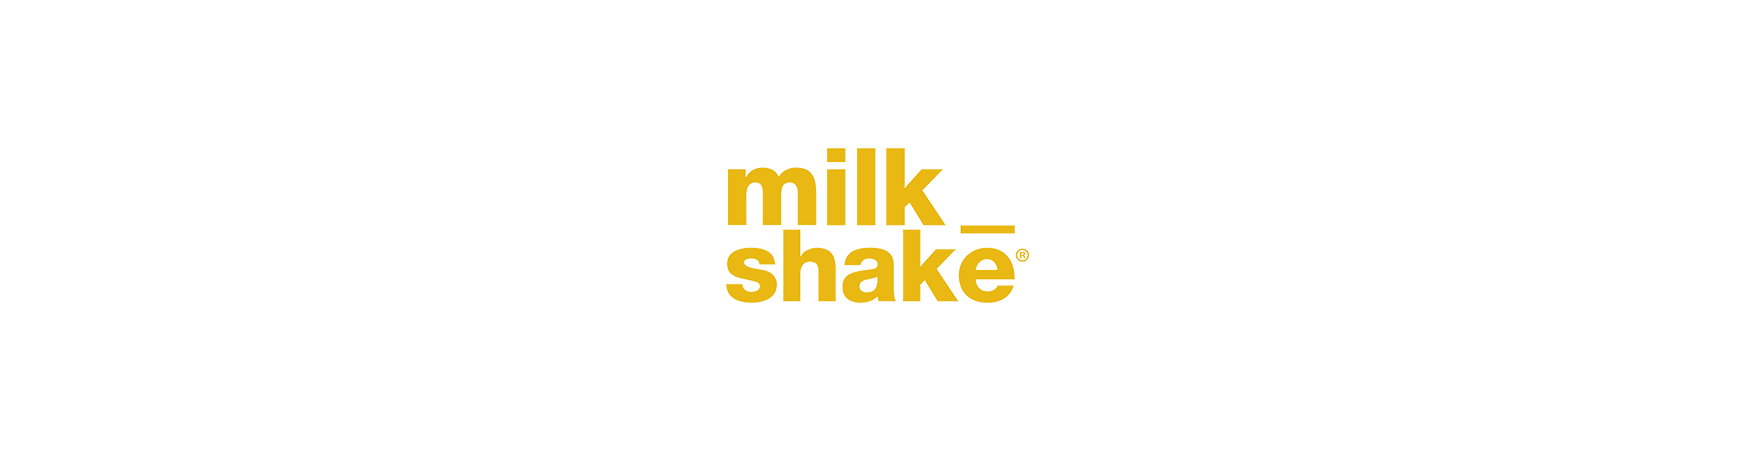 milk_shake